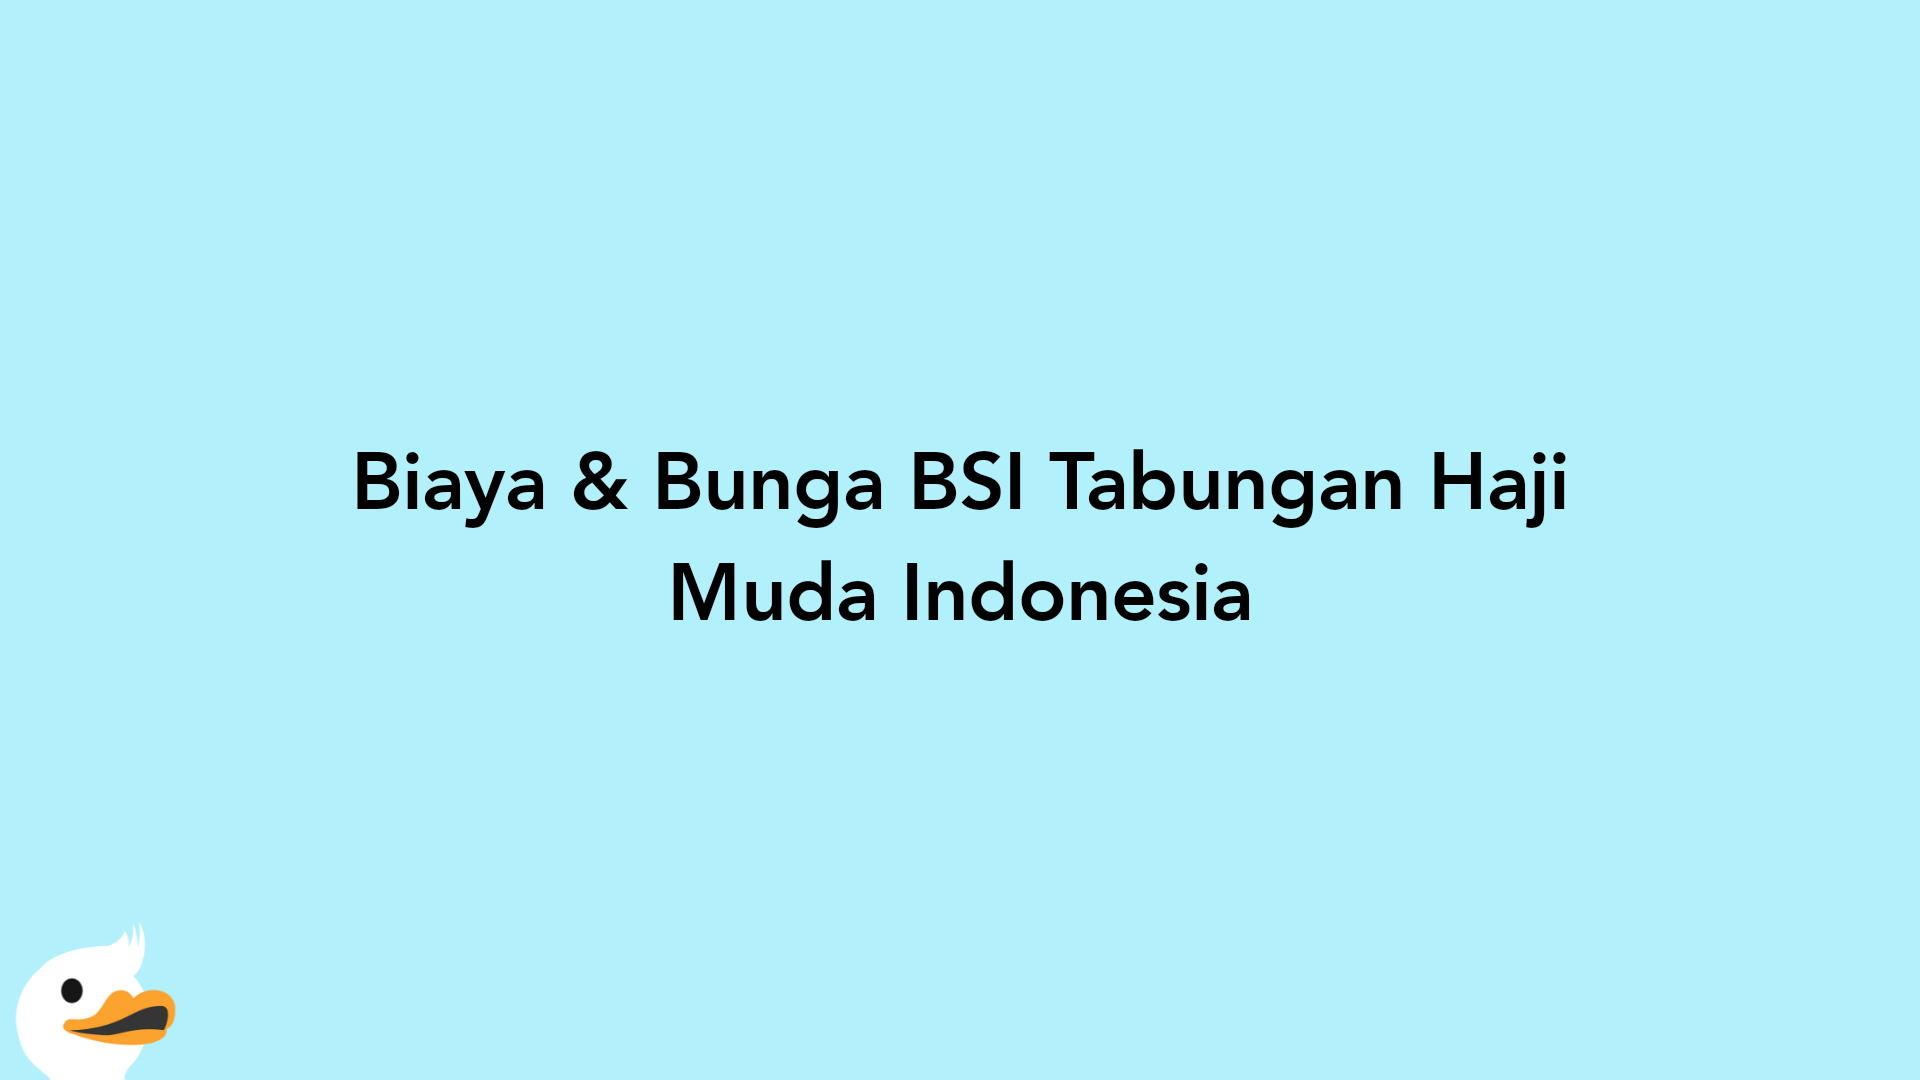 Biaya & Bunga BSI Tabungan Haji Muda Indonesia